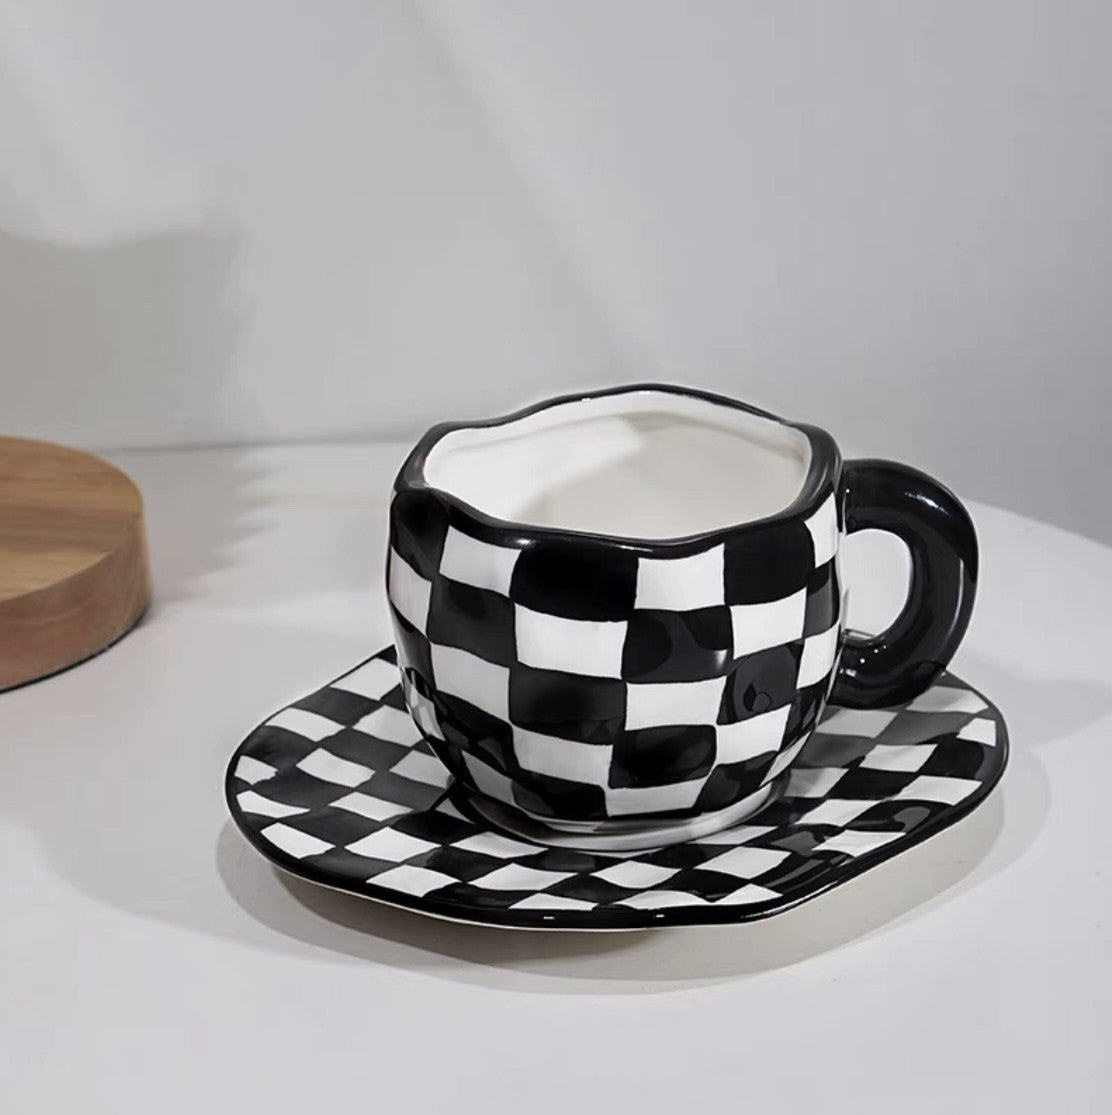 Ceramic coffee mug and saucer set